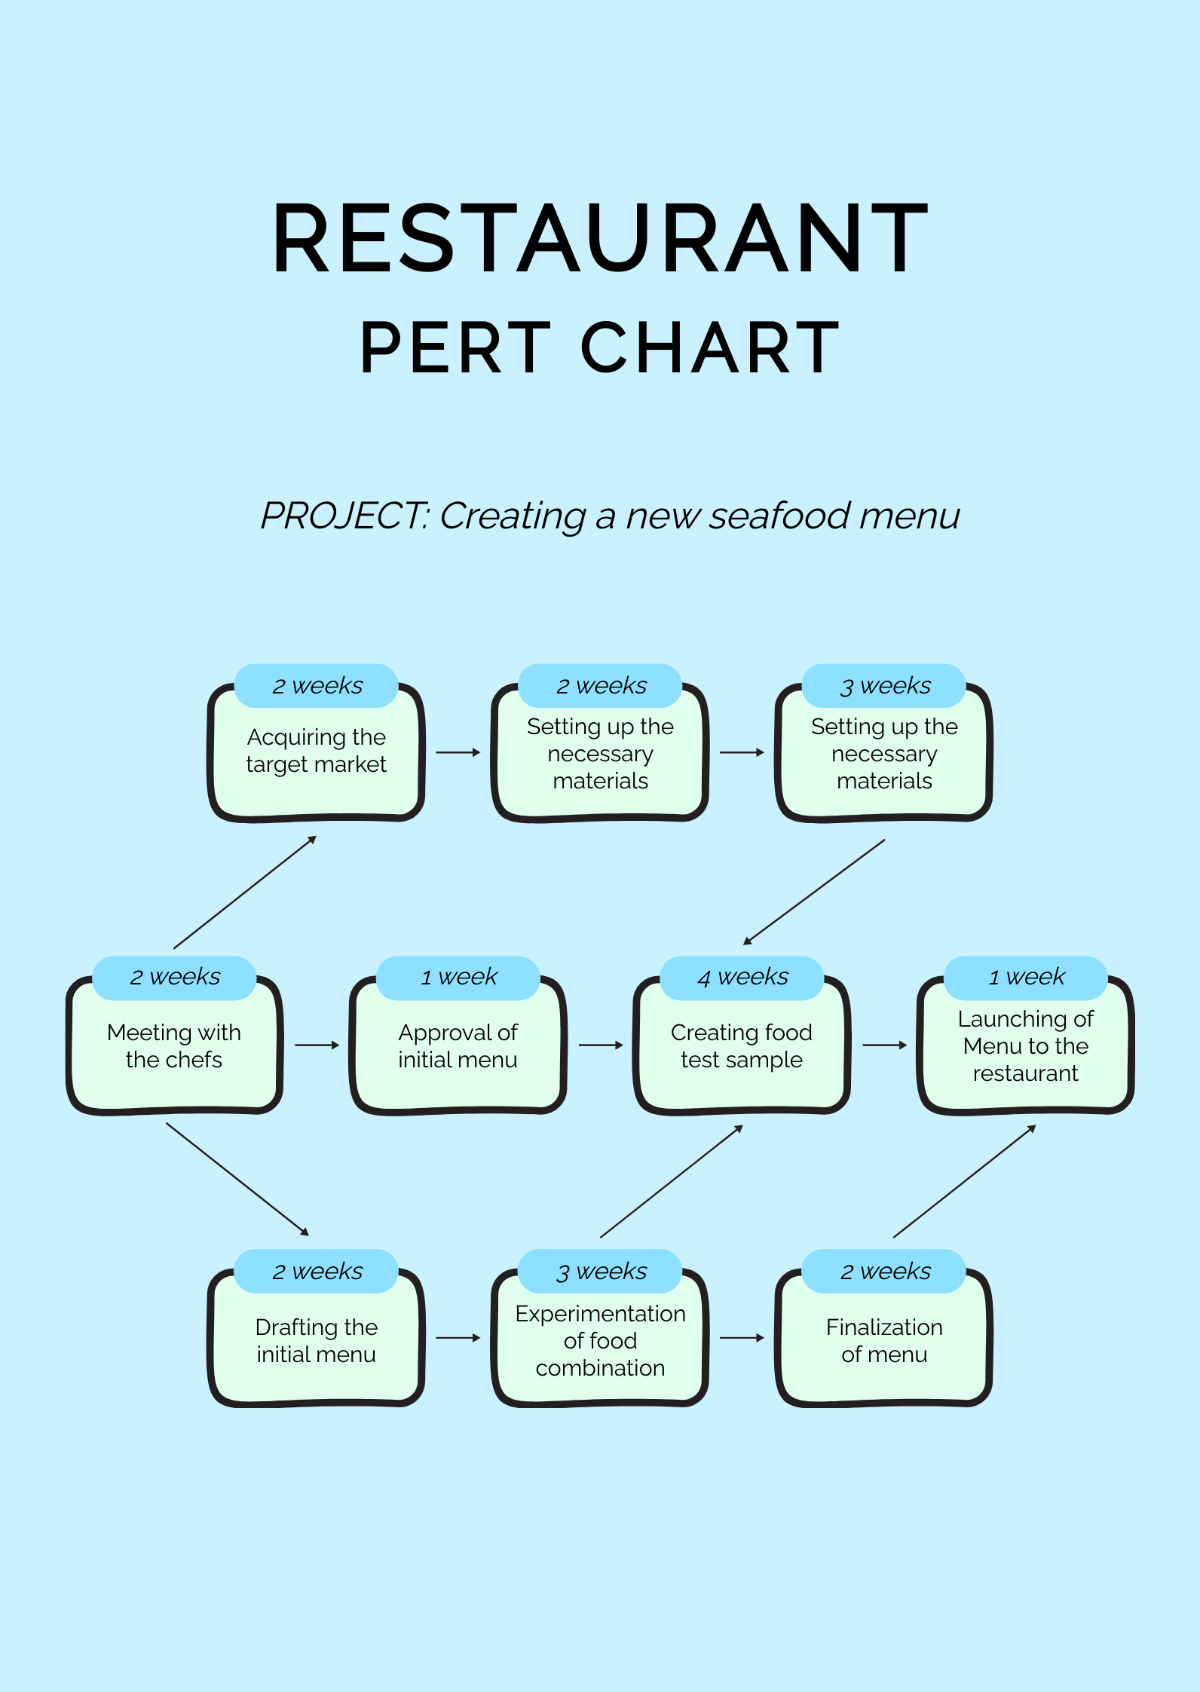 Restaurant PERT Chart